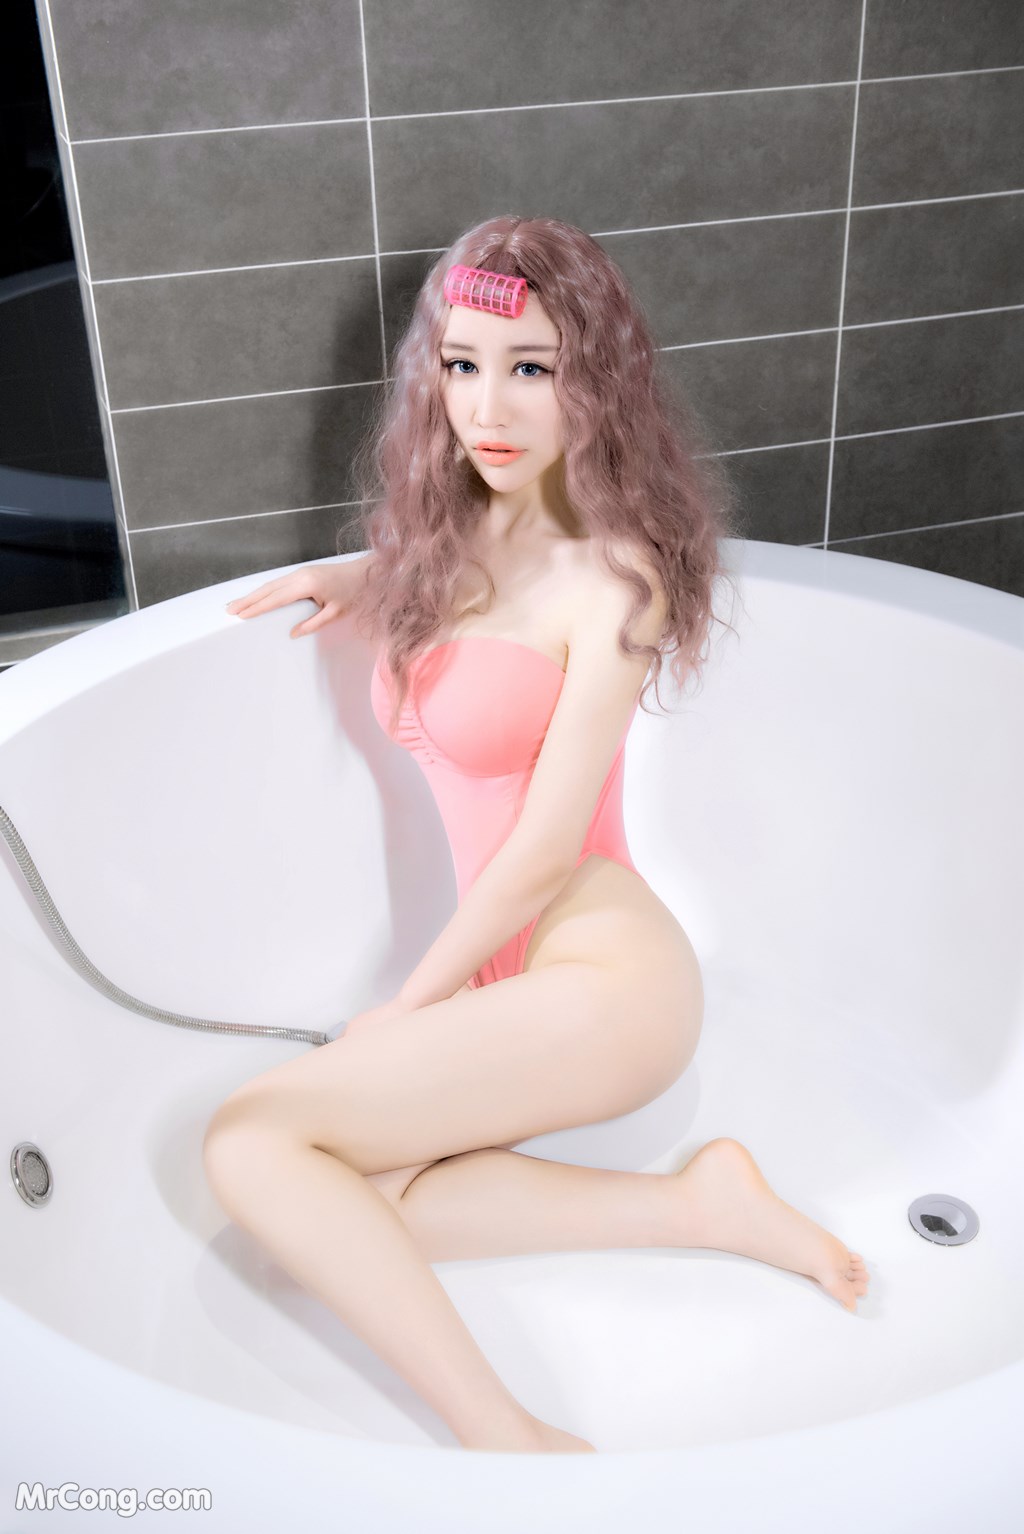 SLADY 2017-05-25 No.005: Model Mei Xin (美 昕) (51 photos)